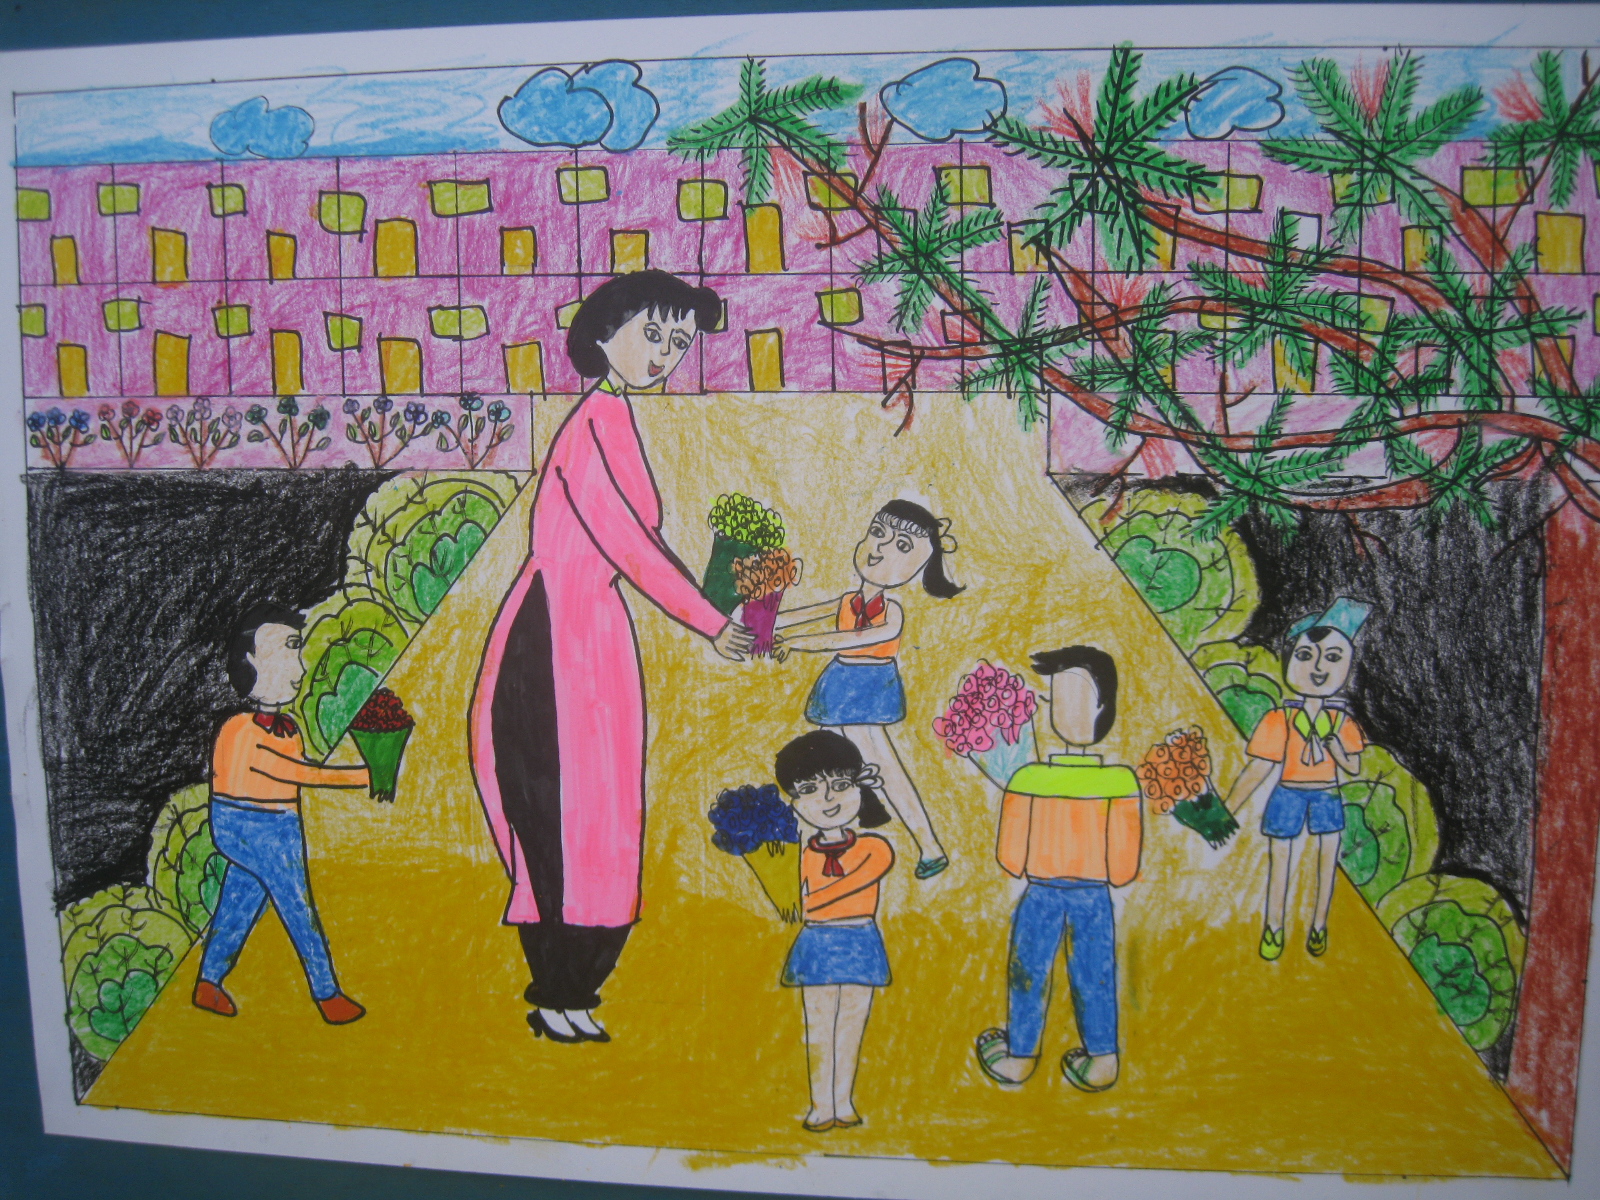 Tổng hợp mẫu tranh vẽ ngày Nhà giáo Việt Nam 2011 đơn giản đẹp 2022